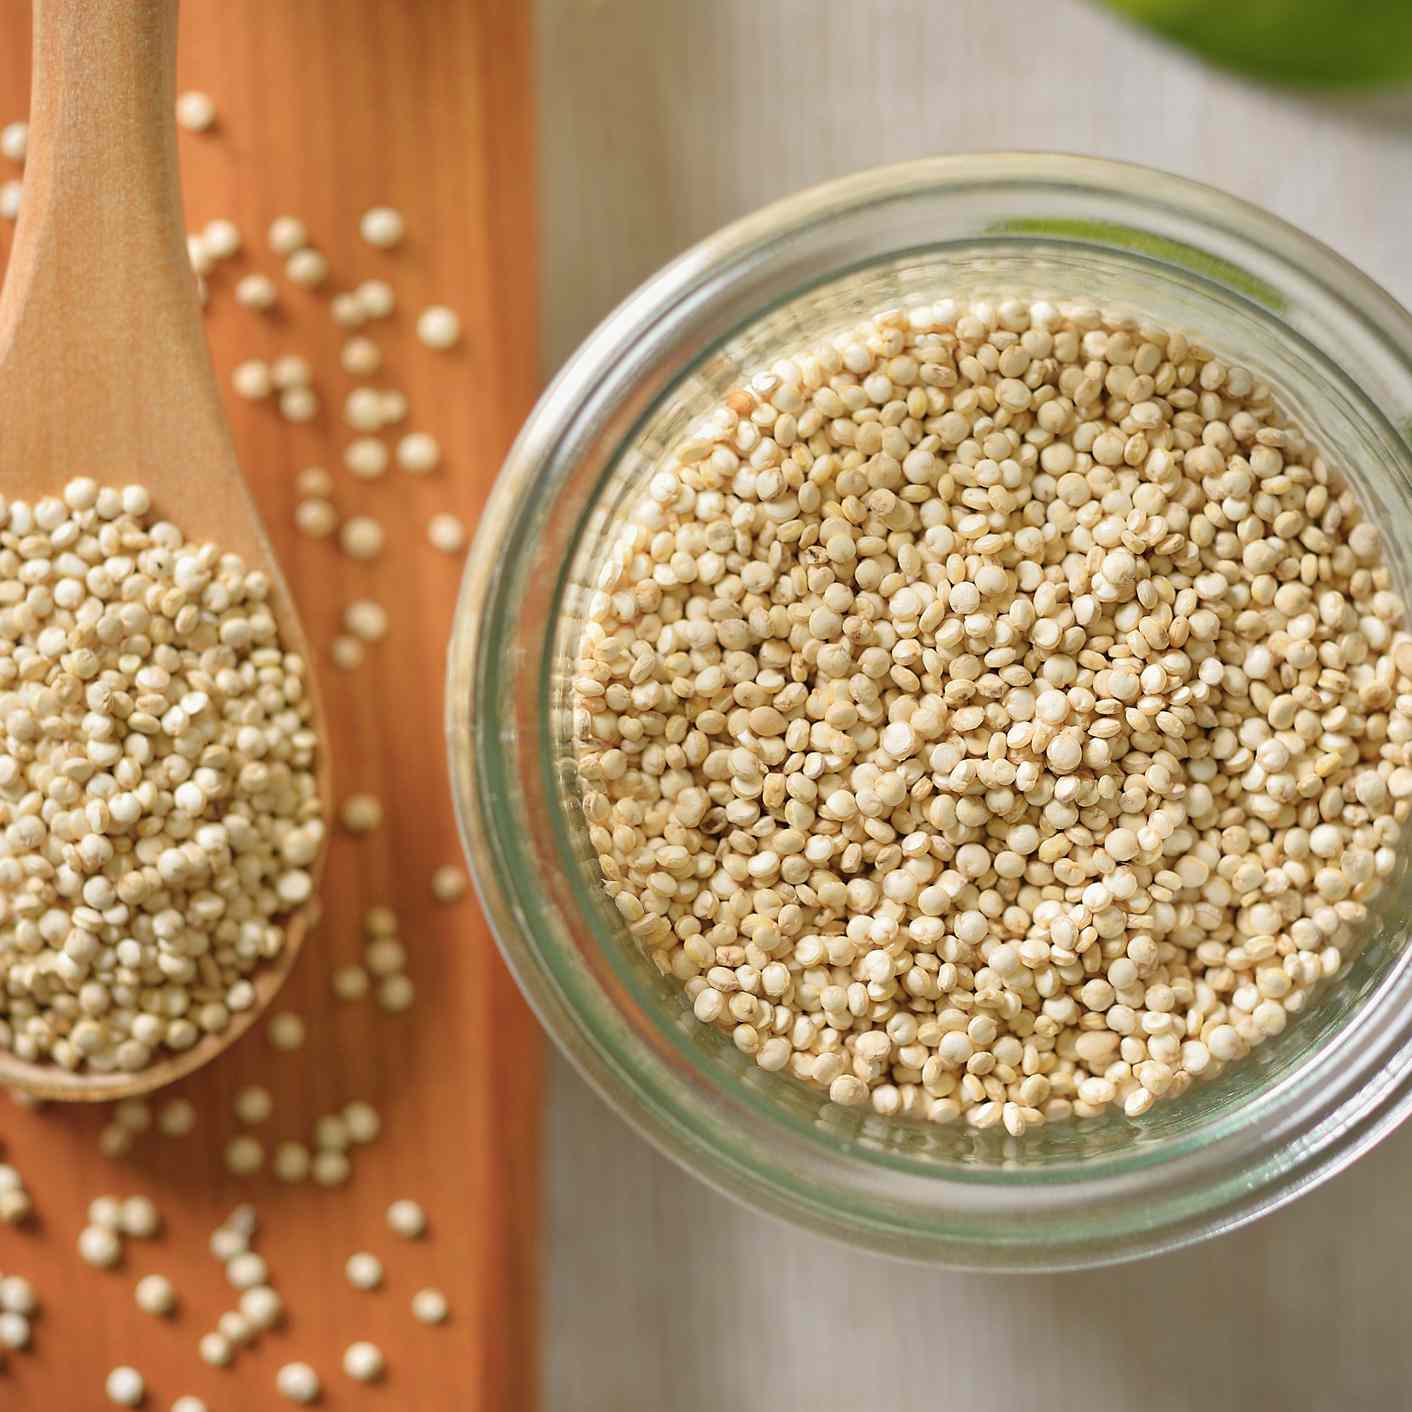 Types of grains - Quinoa (picture)